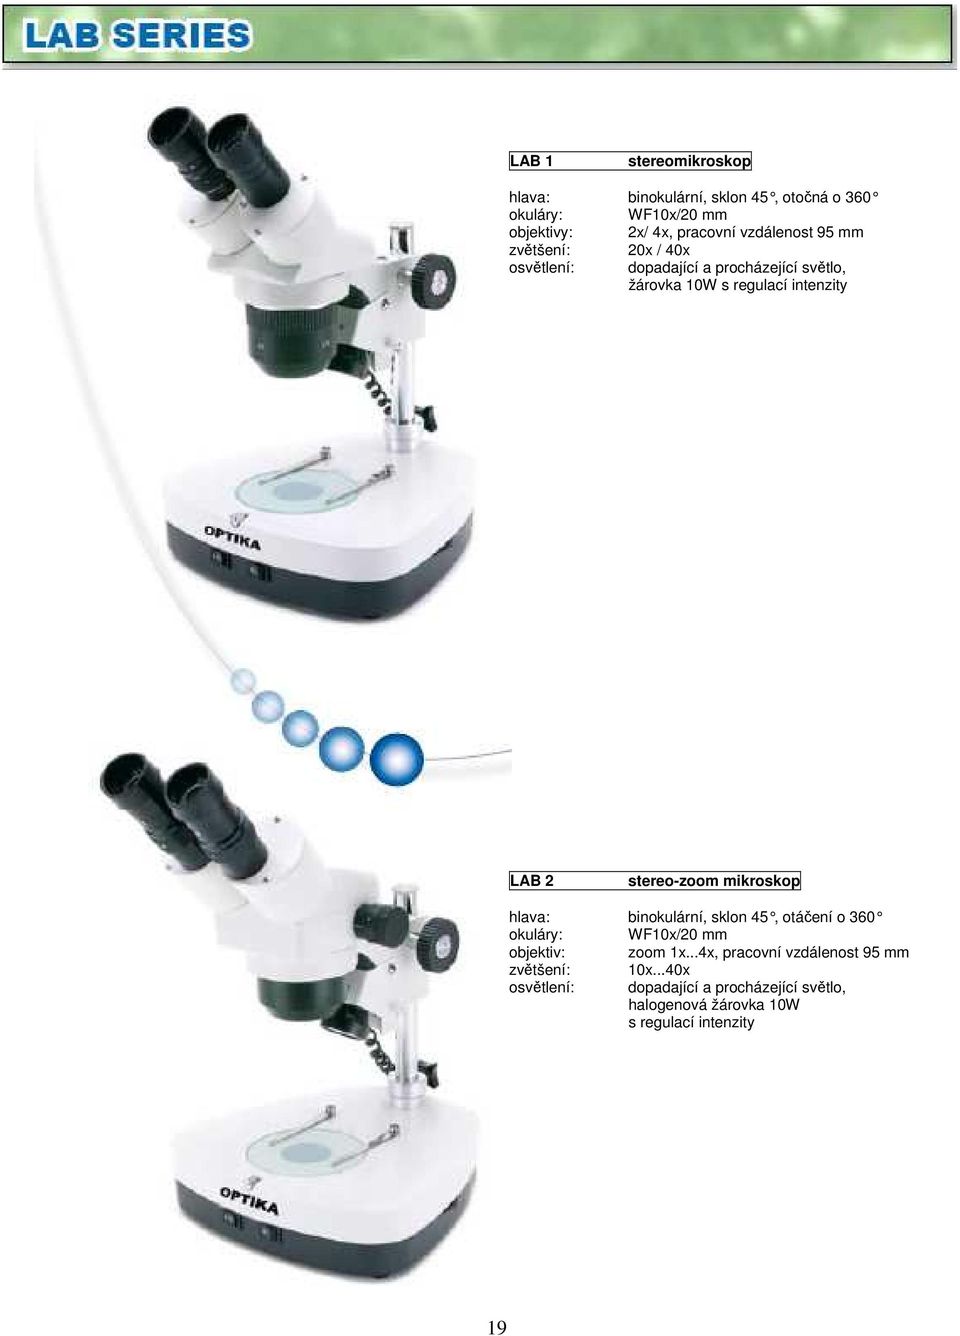 stereo-zoom mikroskop hlava: binokulární, sklon 45, otáčení o 360 WF10x/20 mm objektiv: zoom 1x.